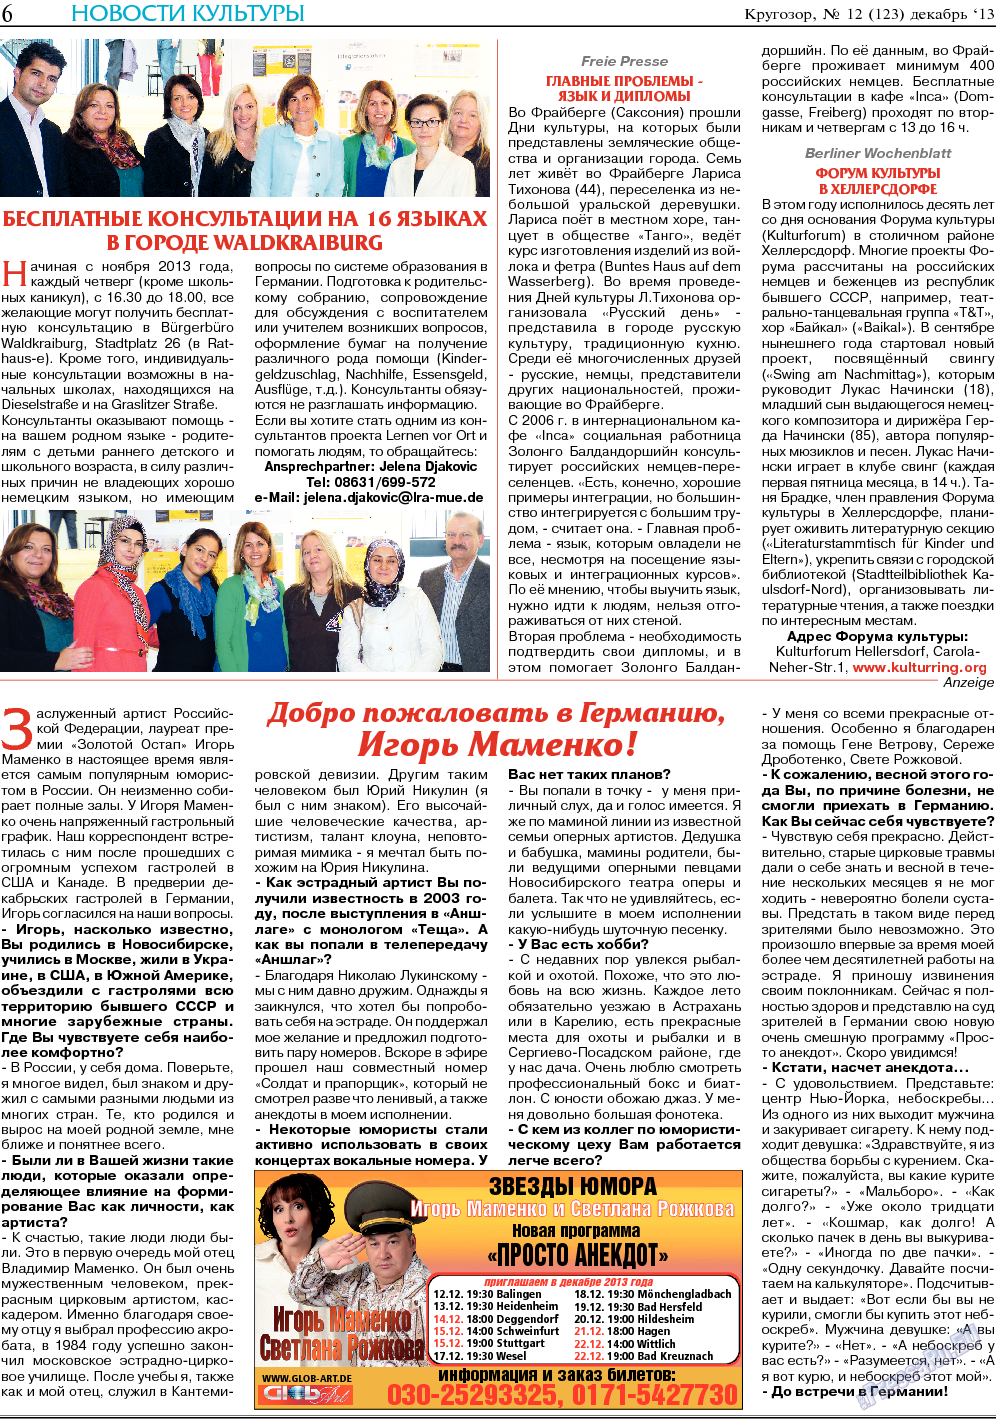 Кругозор, газета. 2013 №12 стр.6